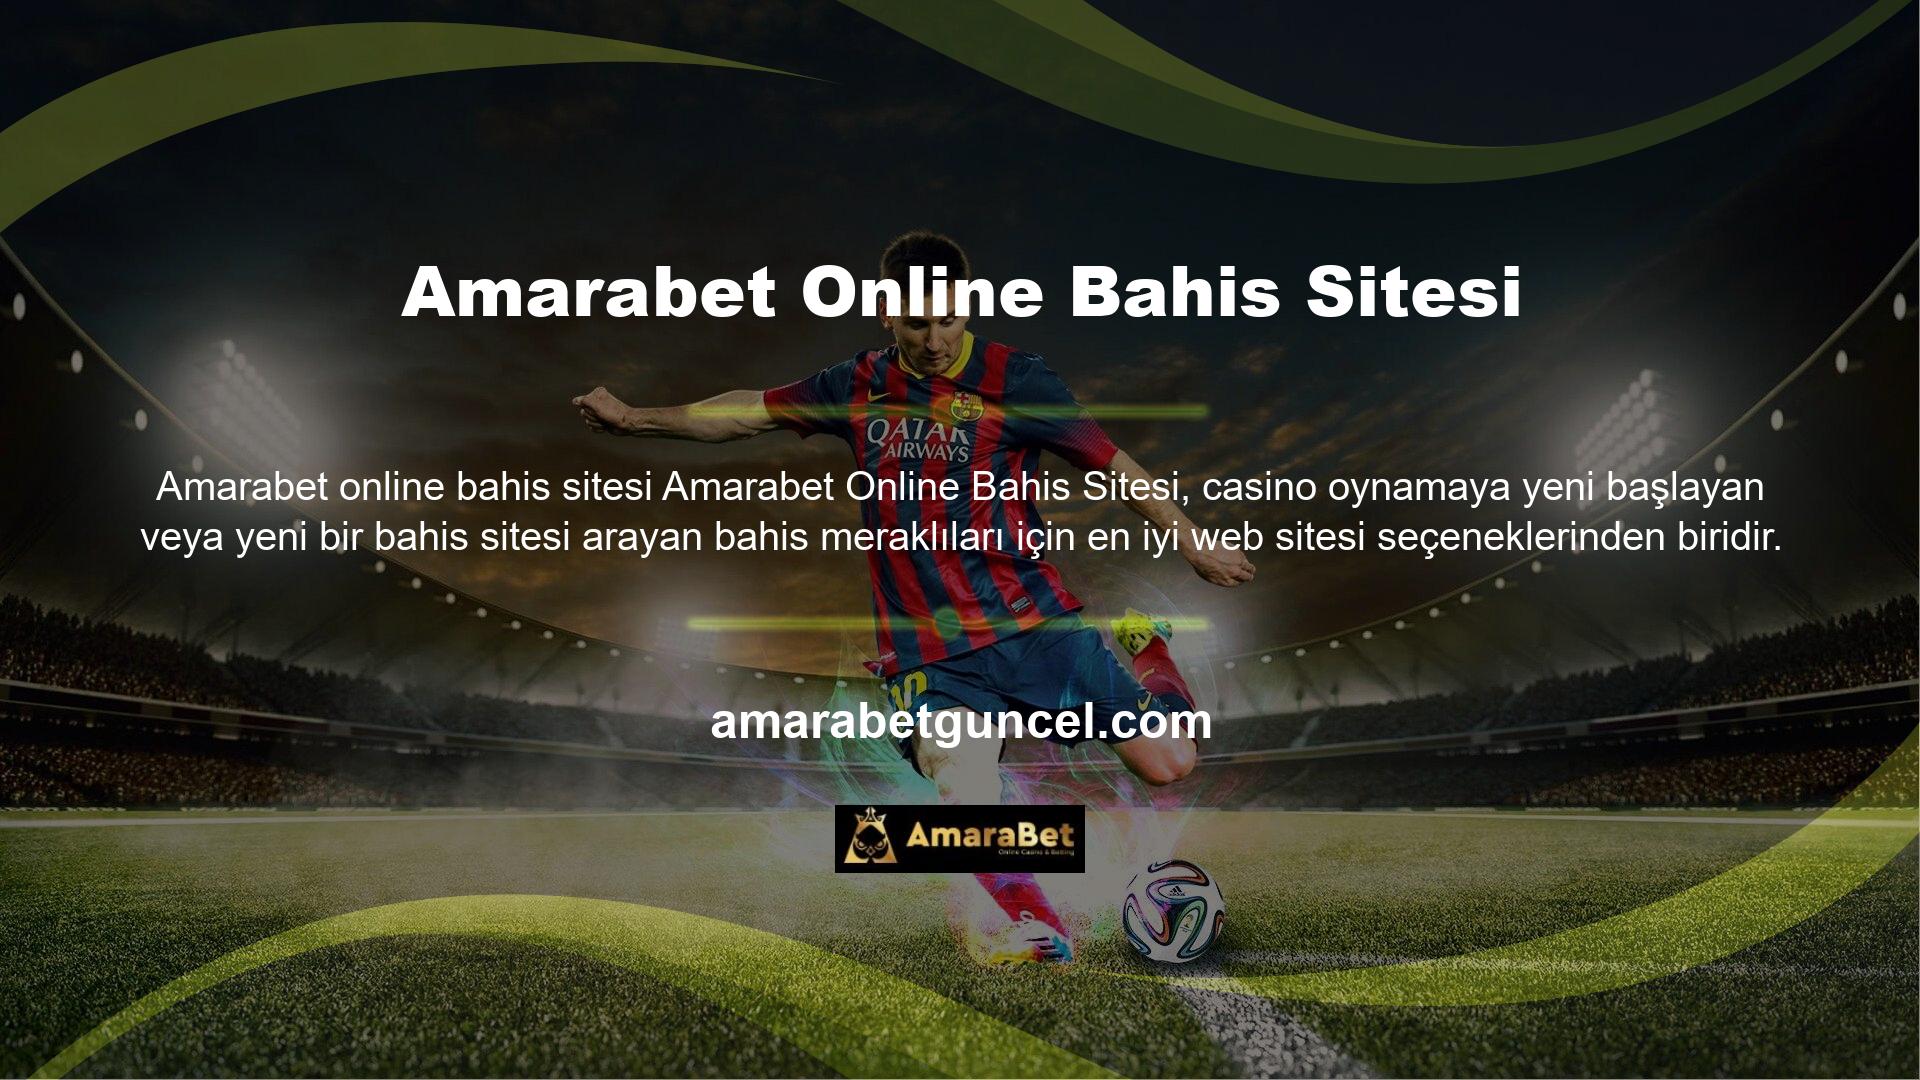 Amarabet web siteleri, bahis pazarındaki tecrübeleri nedeniyle kullanıcılara ve bahisçilere kaliteli ve güvenilir hizmetler sunmaktadır